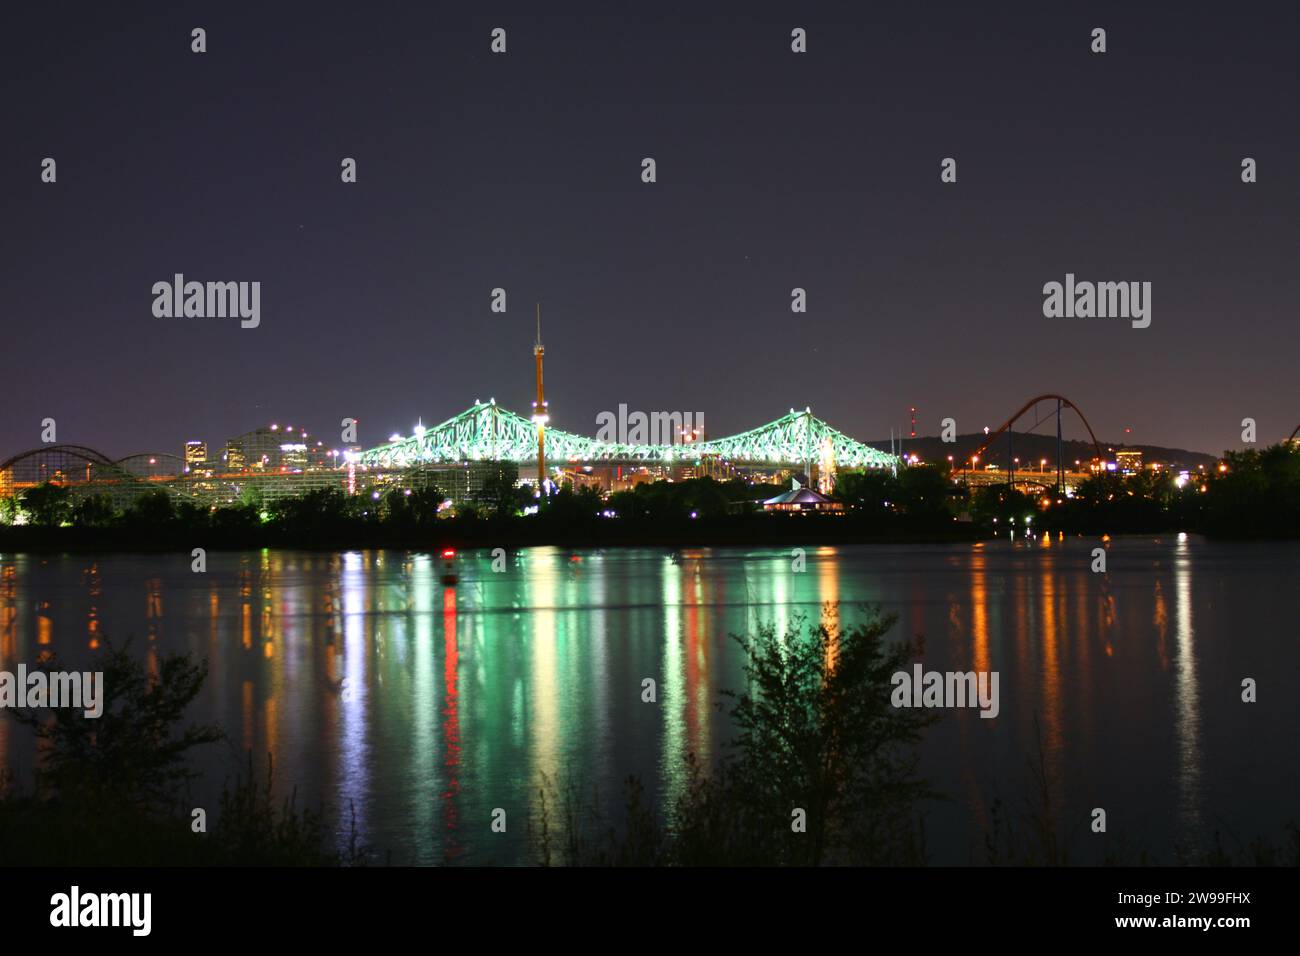 Uno skyline illuminato della città di notte, con le luci luminose che si riflettono sulle acque di un fiume sottostante Foto Stock